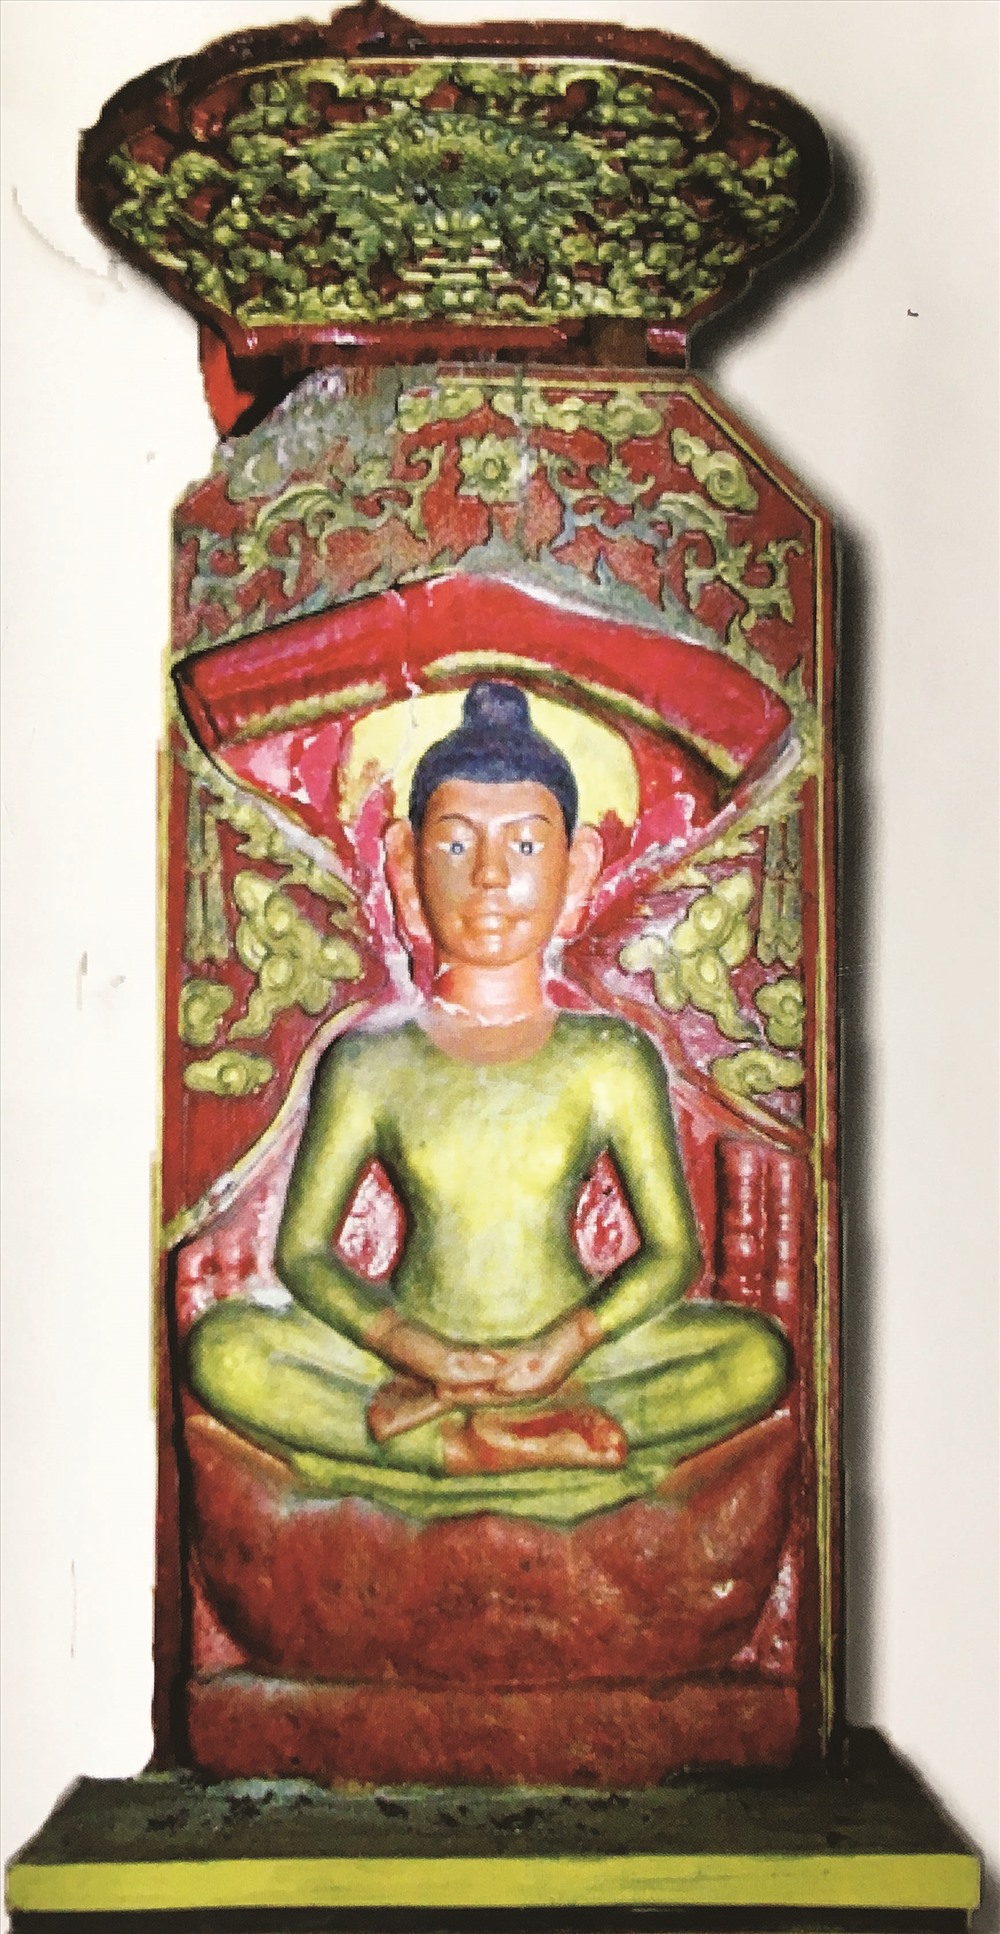 Tượng Bá Đá (Ngài Đá) còn được gọi là Thành Hoàng, vốn là phù điêu thần Shiva, hiện được thờ ở nghè Phương Sơn 